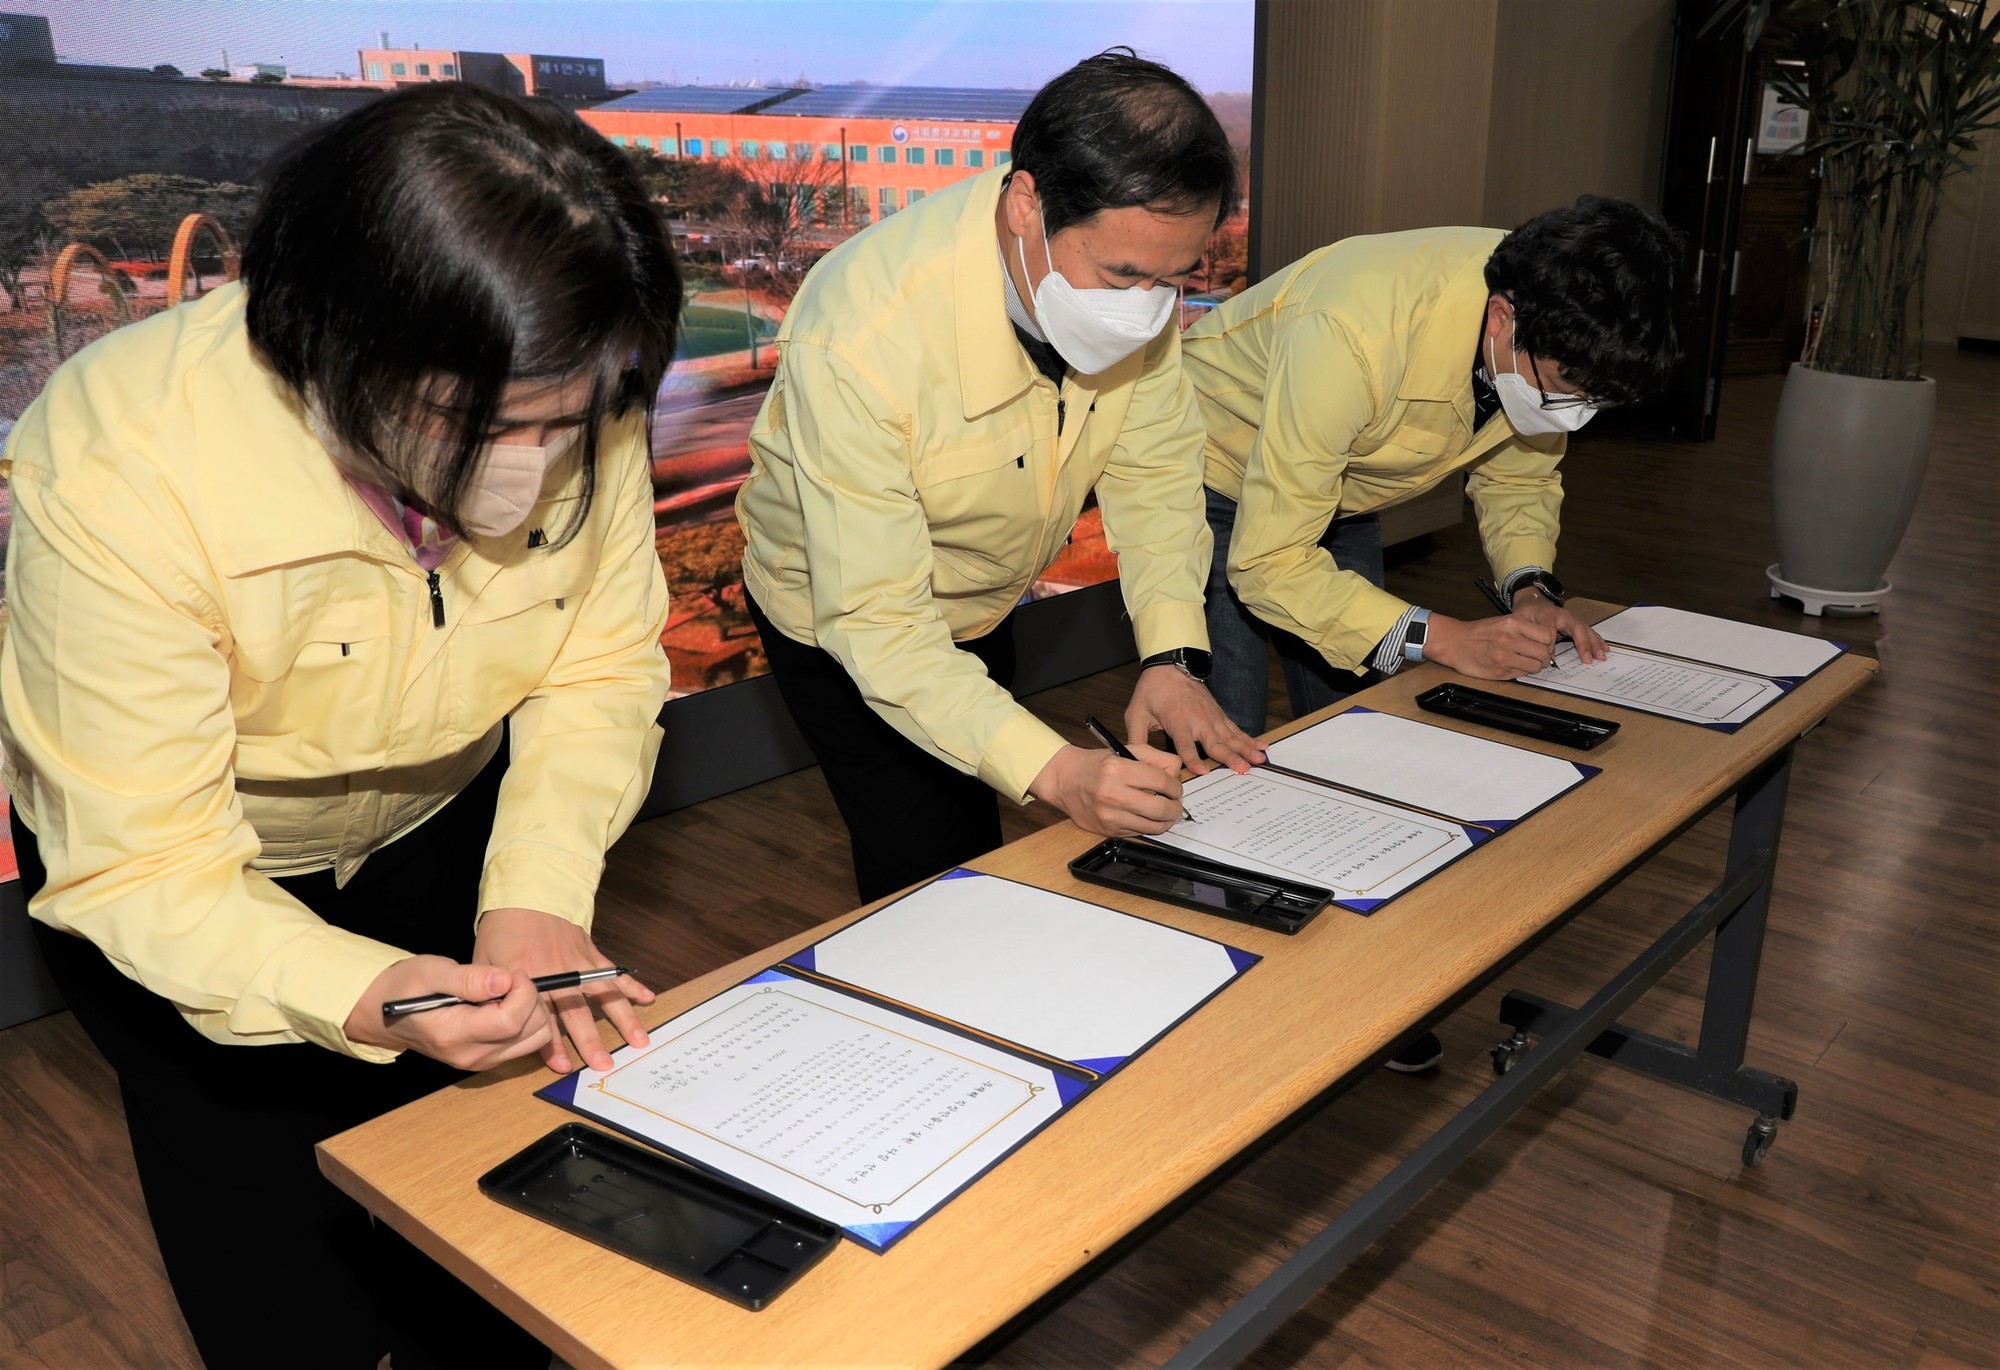 김동진 원장(중앙)이 선언문에 서명하는 장면